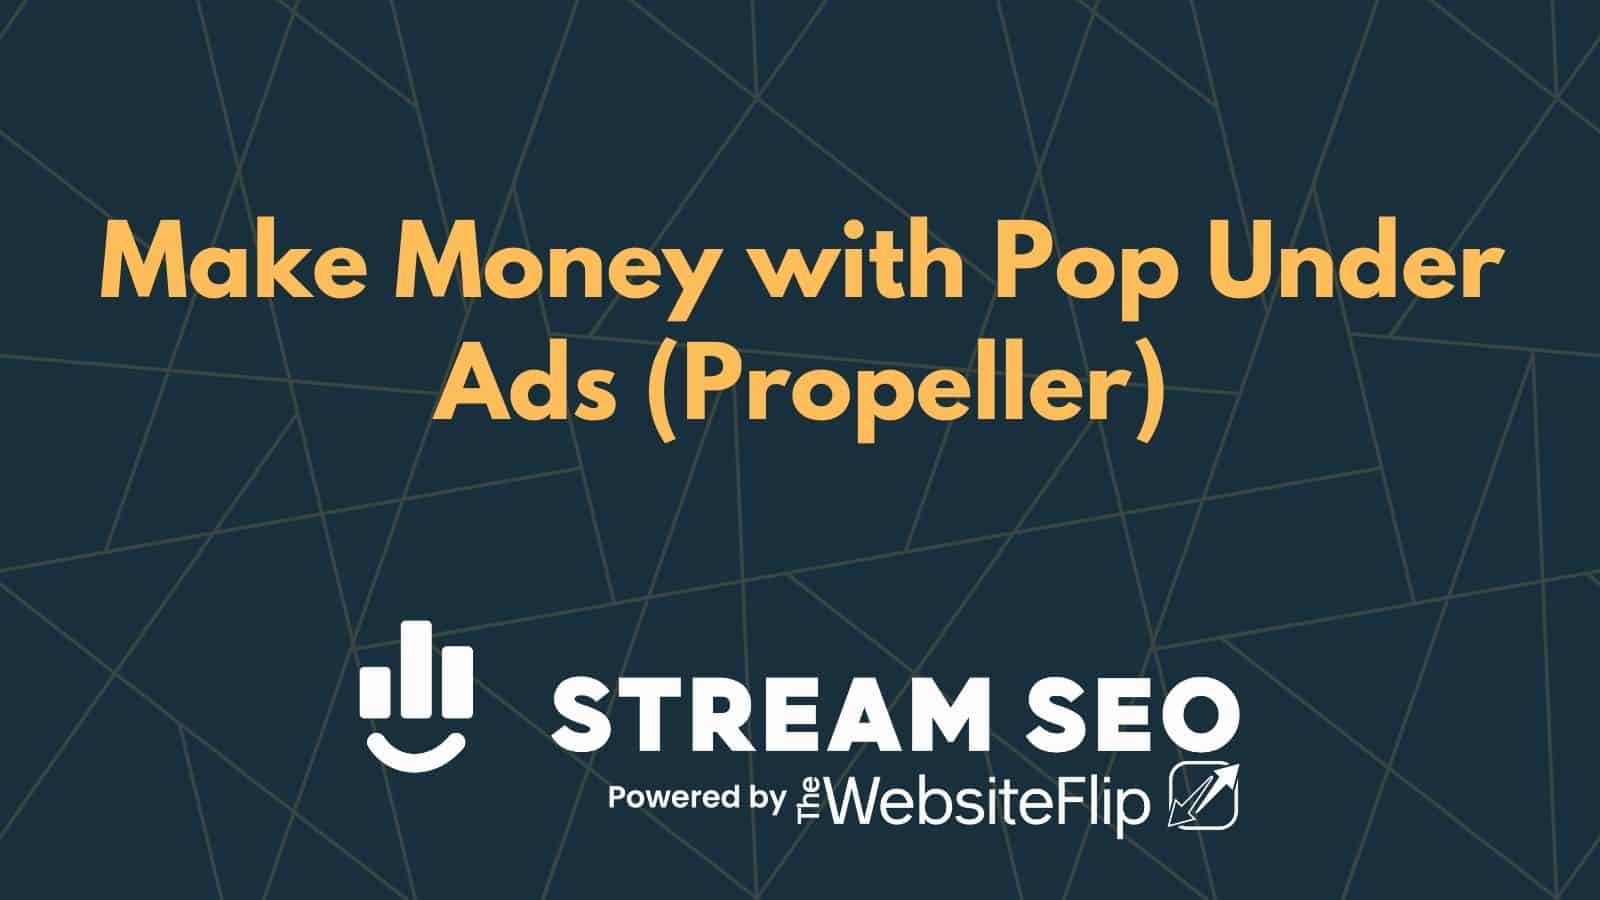 Make Money with Pop Under Ads (Propeller)